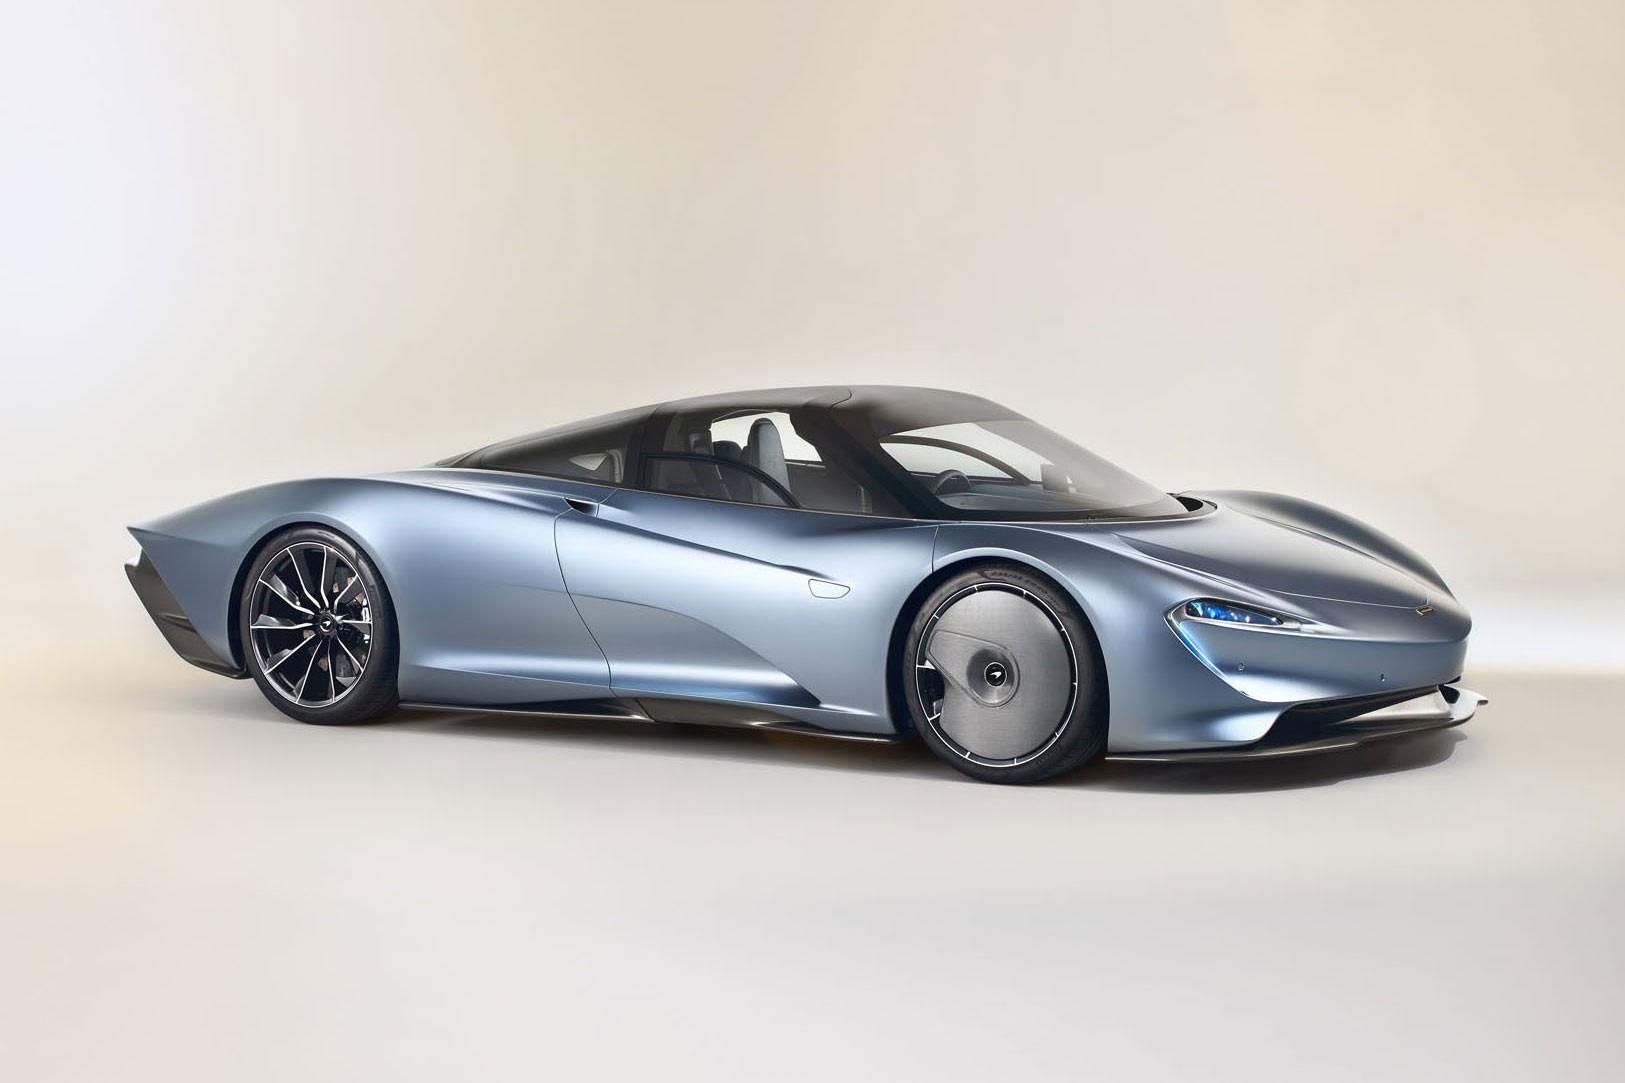 McLaren’ın Yeni Hypercar’ı: “Speedtail”